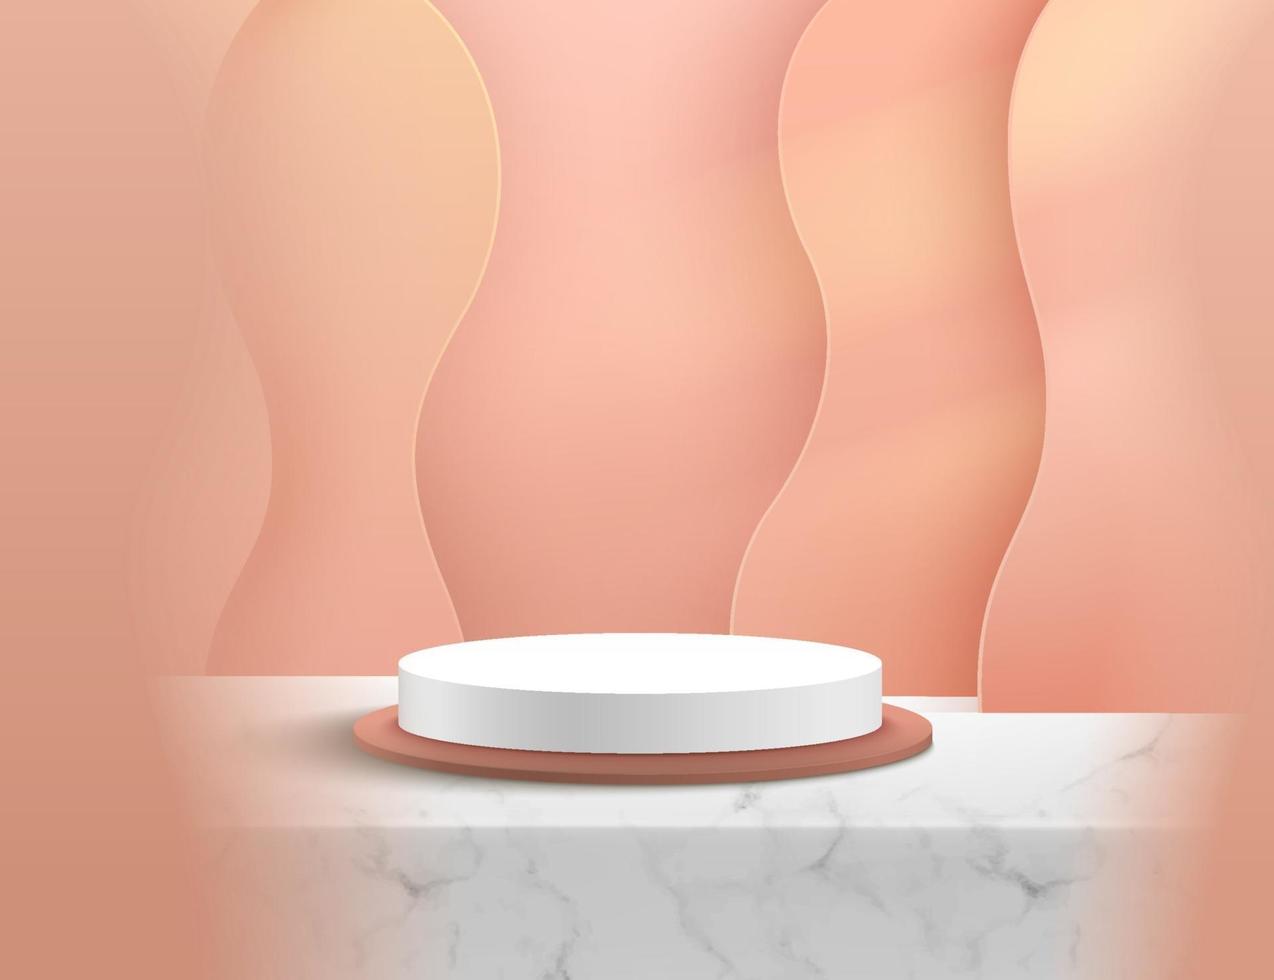 podium de cylindre de marbre blanc moderne avec une pièce vide rose tendre et un fond de couche de motif de vague. vecteur abstrait rendant la forme 3d pour l'affichage des produits publicitaires. concept de salle de studio de scène minimale.